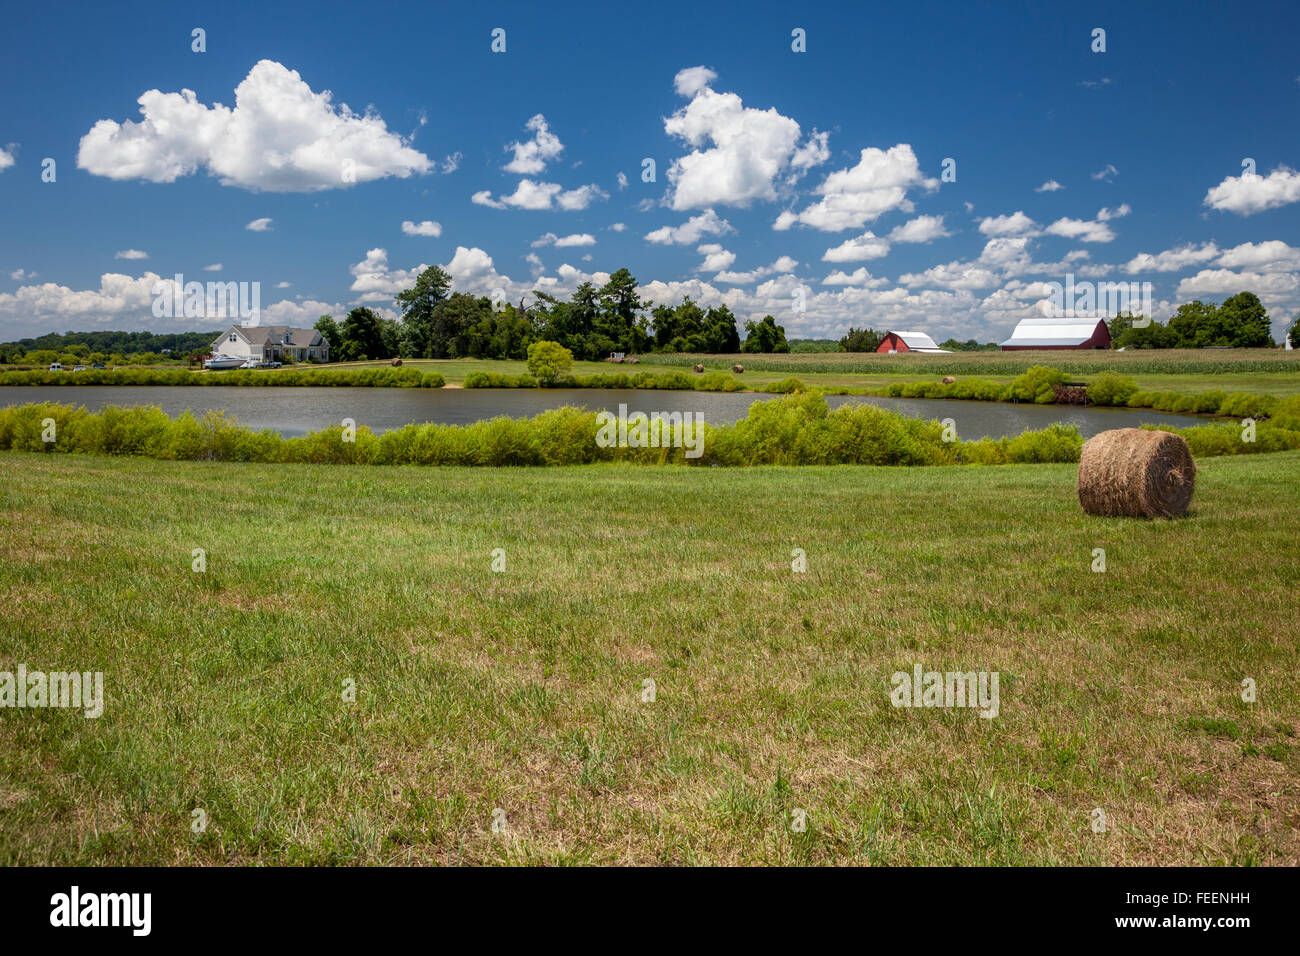 Leonardtown, Maryland, Stati Uniti d'America. Agriturismo, con balle di fieno in pascolo, stagno, fienili, Cornfield in distanza. Foto Stock